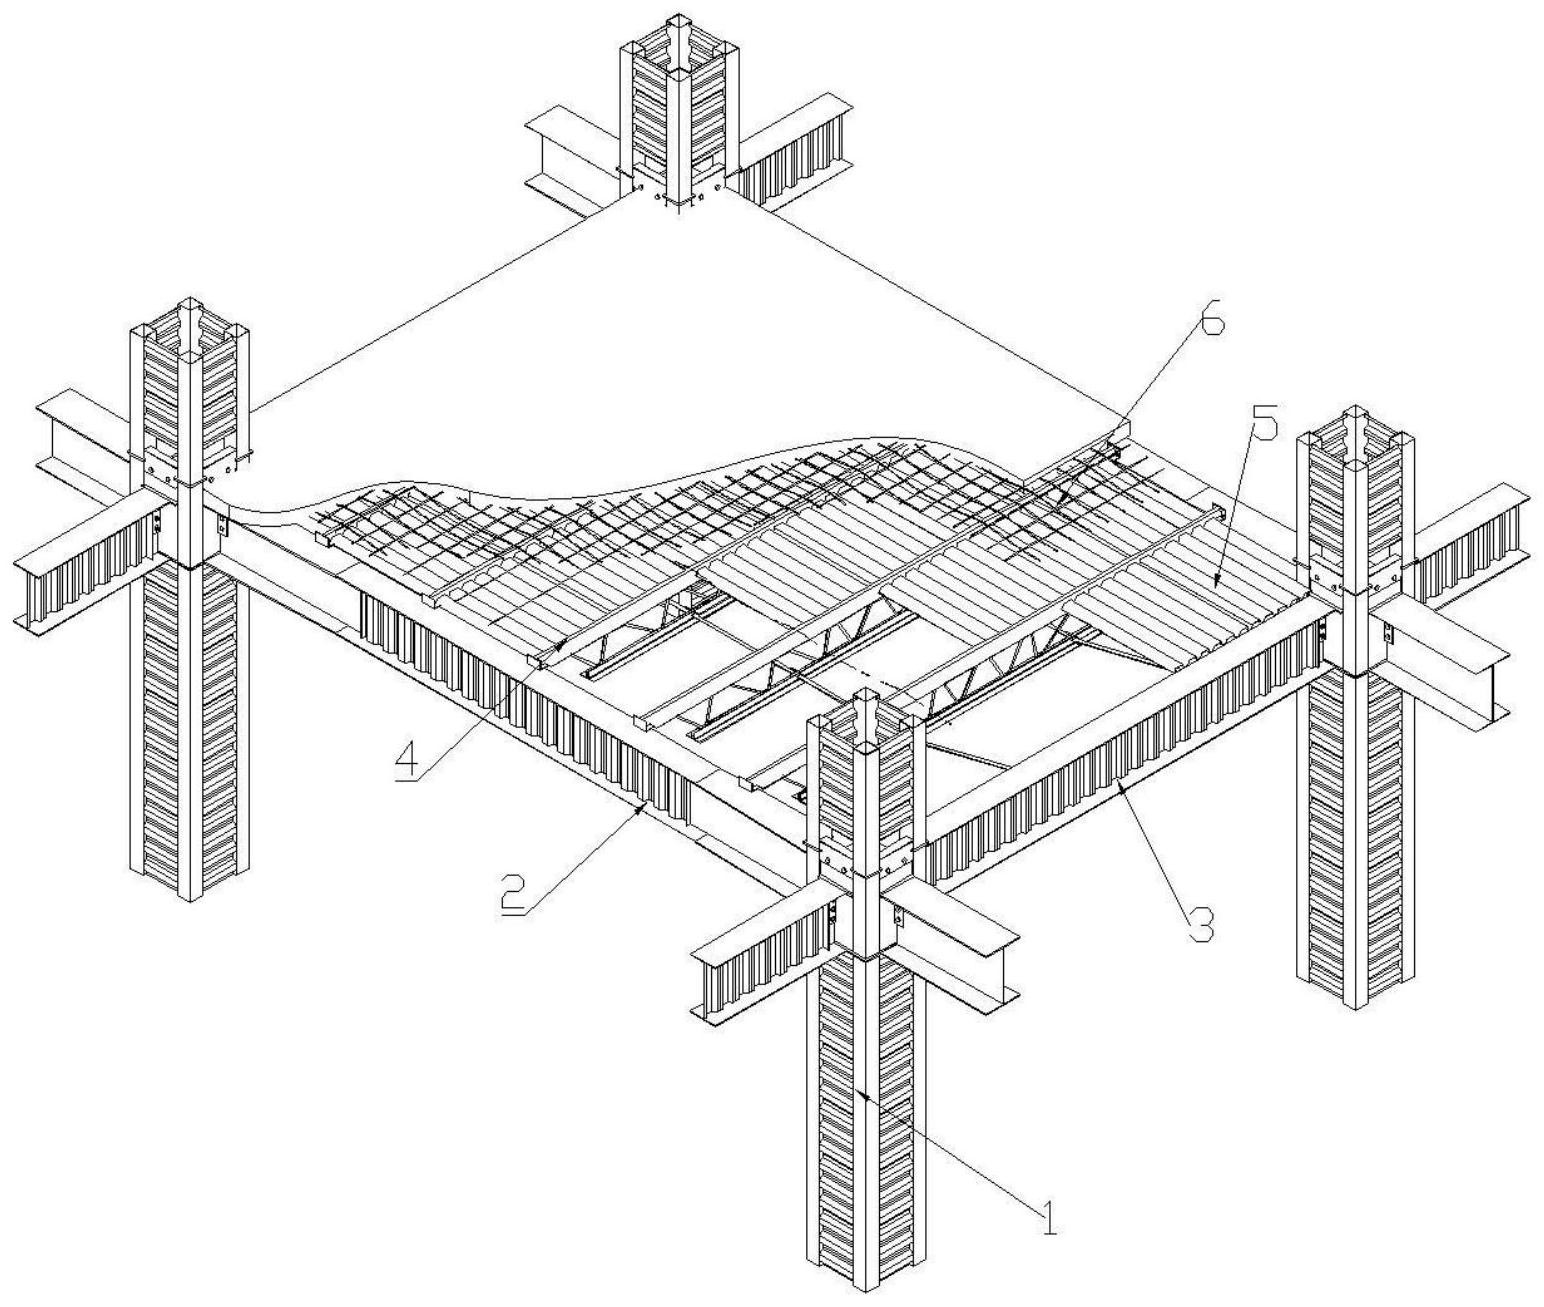 cn111206680a_一种组合楼盖框架结构建筑系统在审